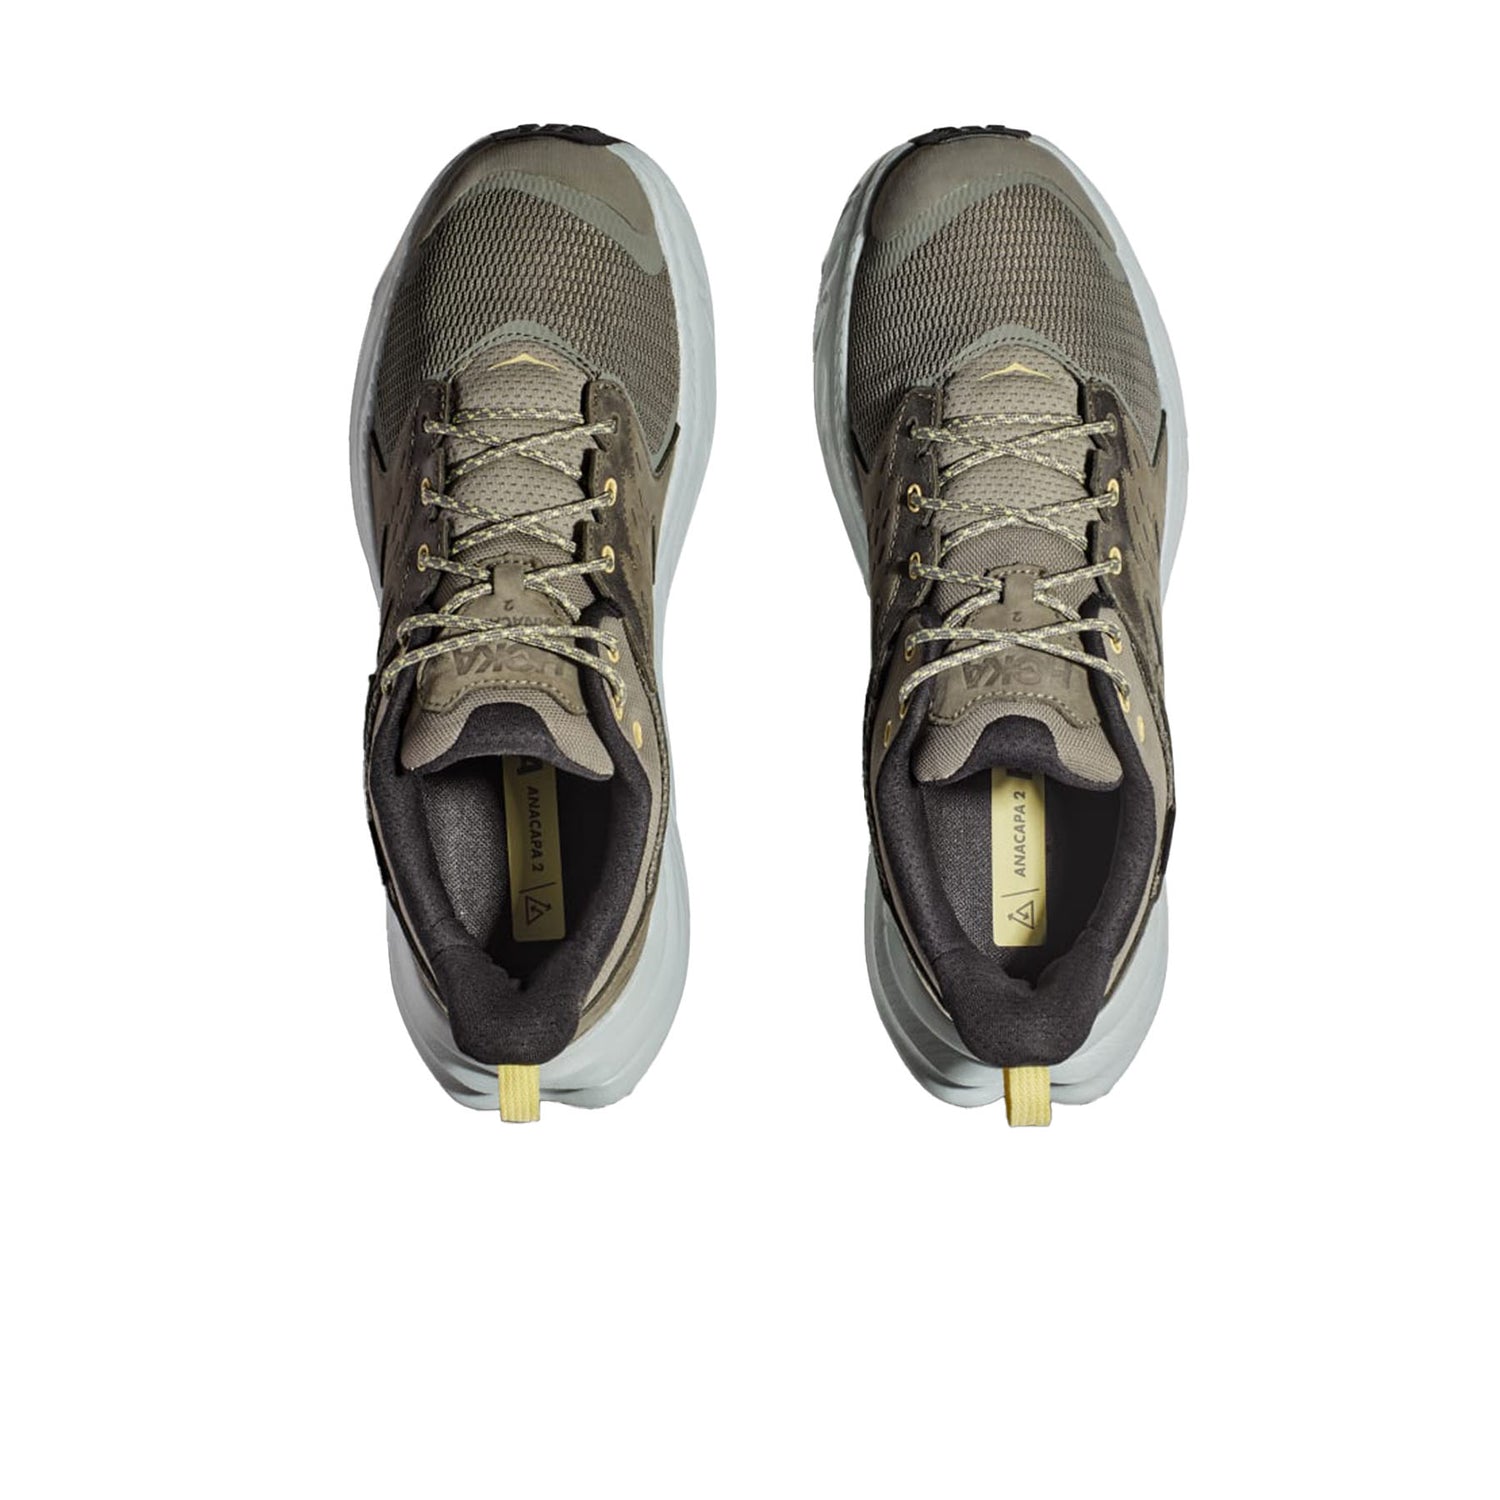 Hoka Men's Anacapa 2 Low GORE-TEX Hiking Shoes 